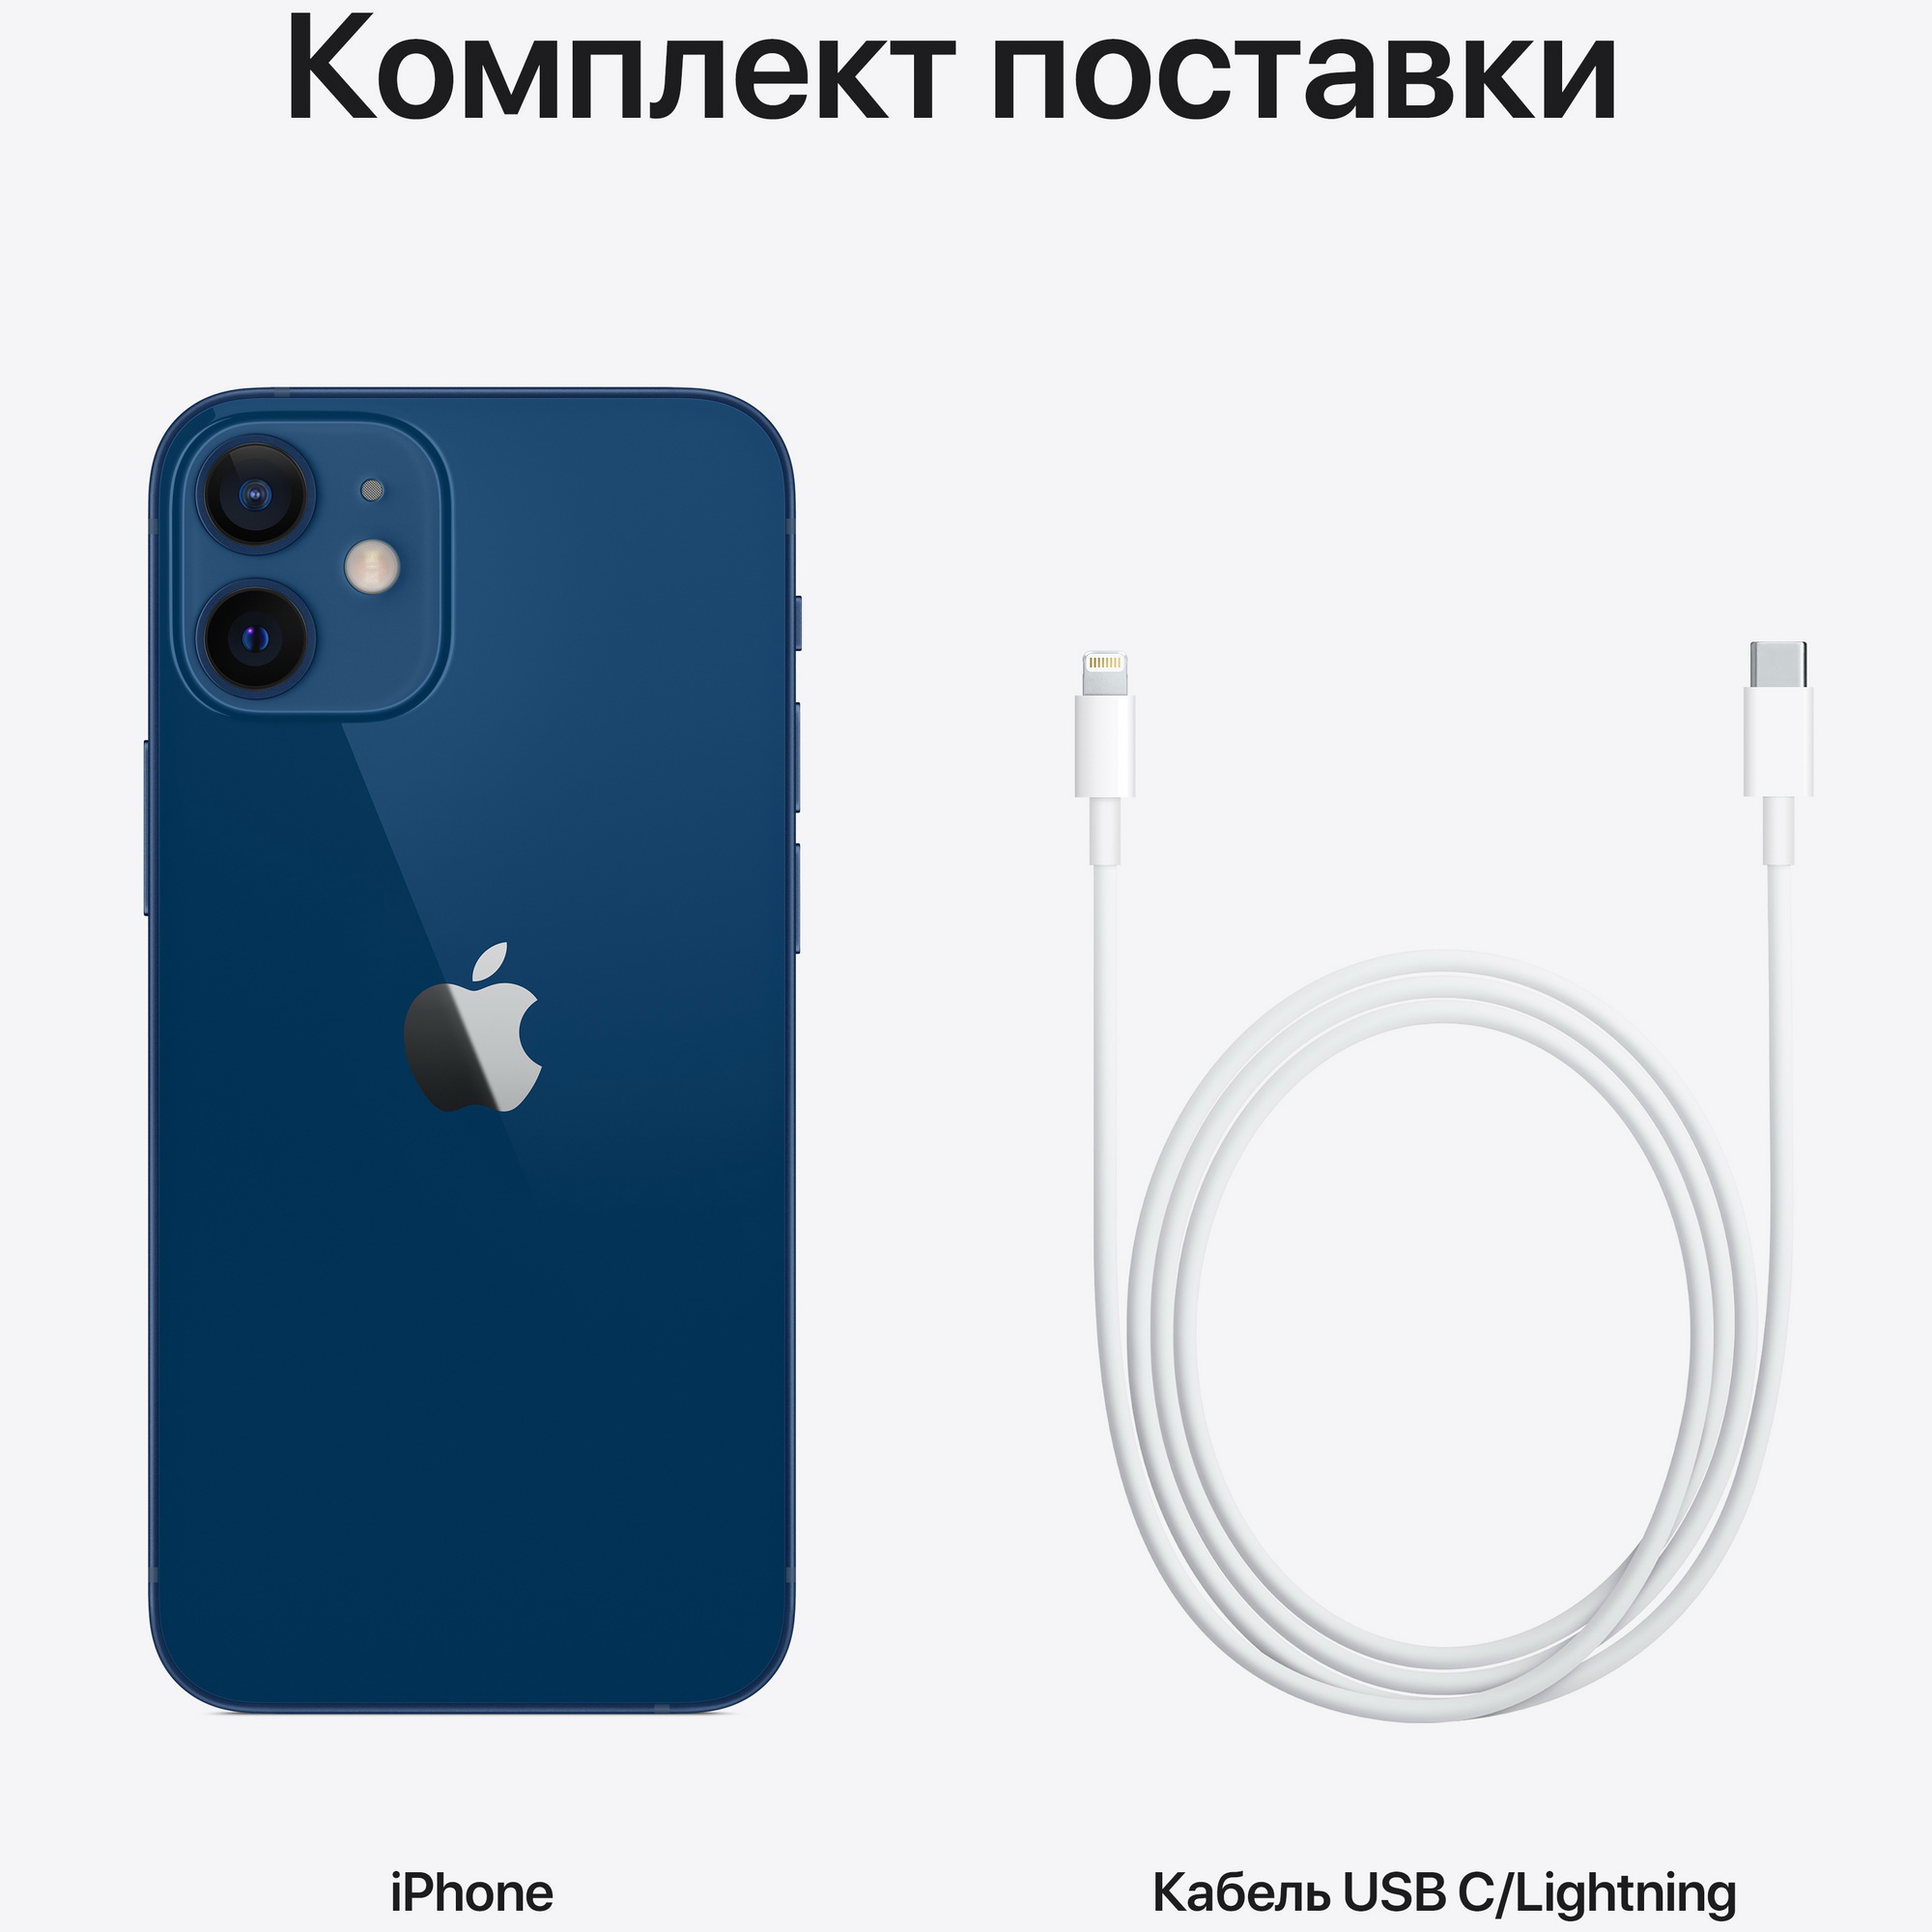 Смартфон Apple iPhone 12 MINI 128 GB синий, цвет 16,7 млн A14 Bionic - фото 4